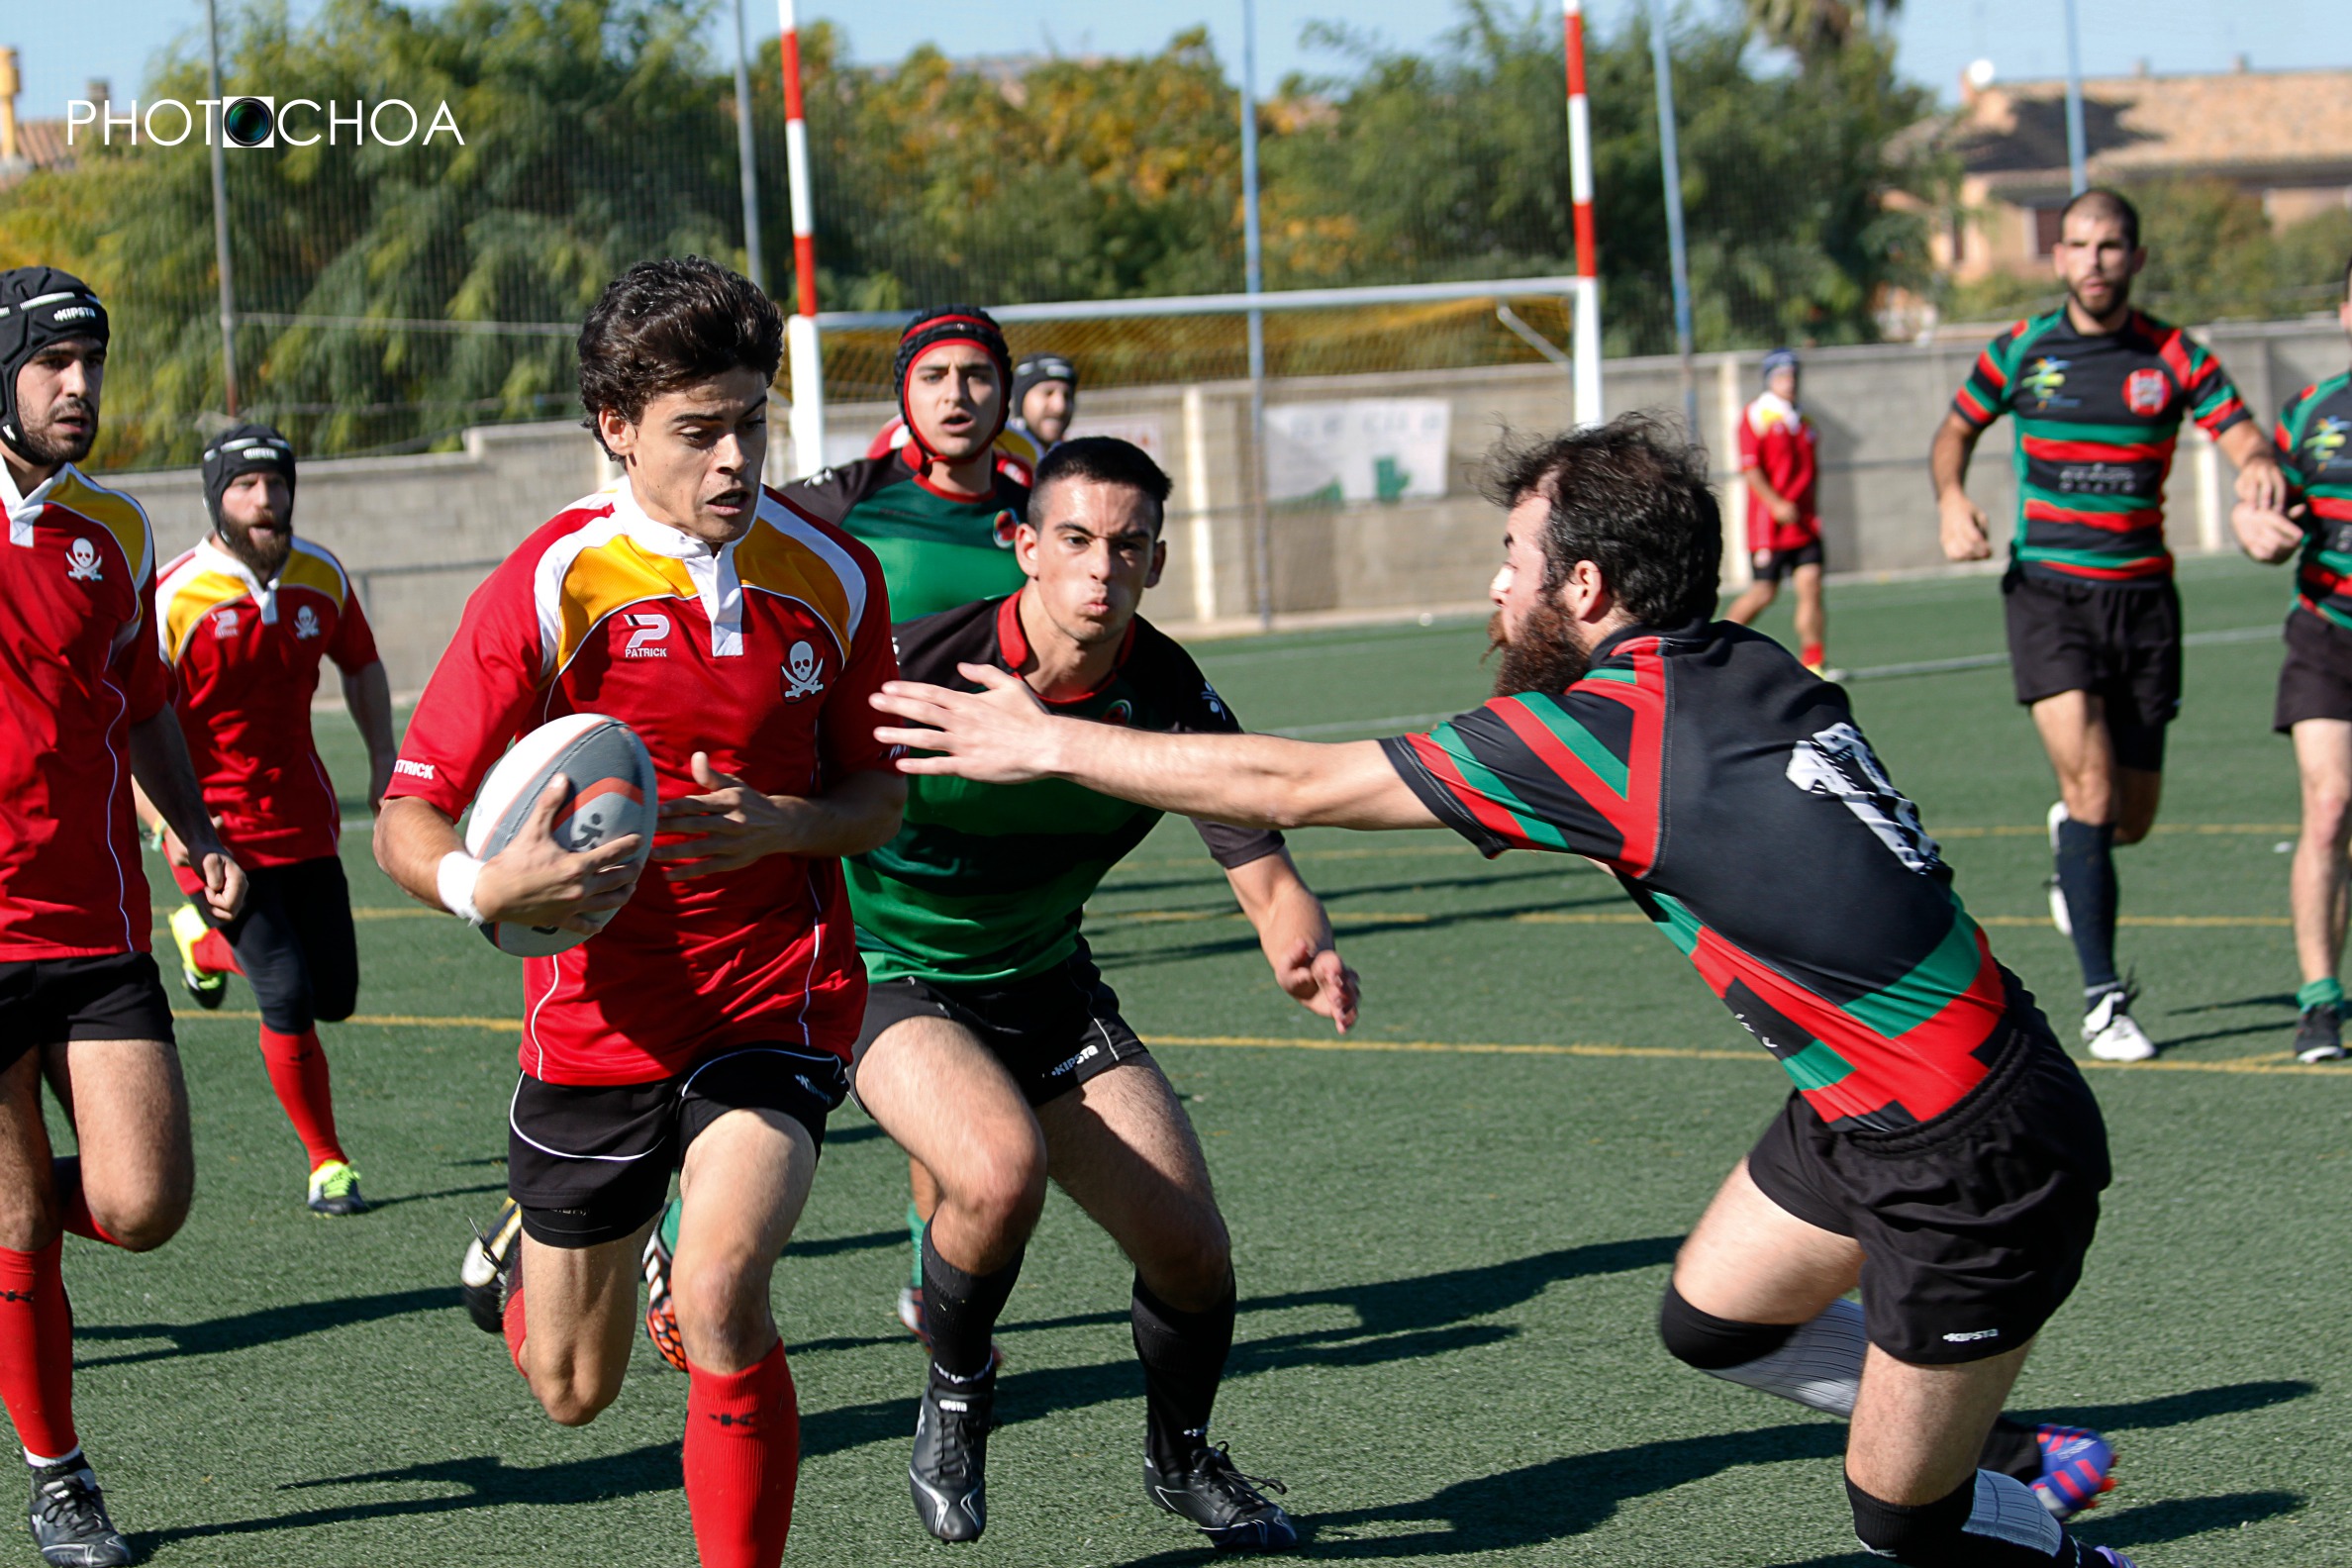 Club Bucaneros Rugby